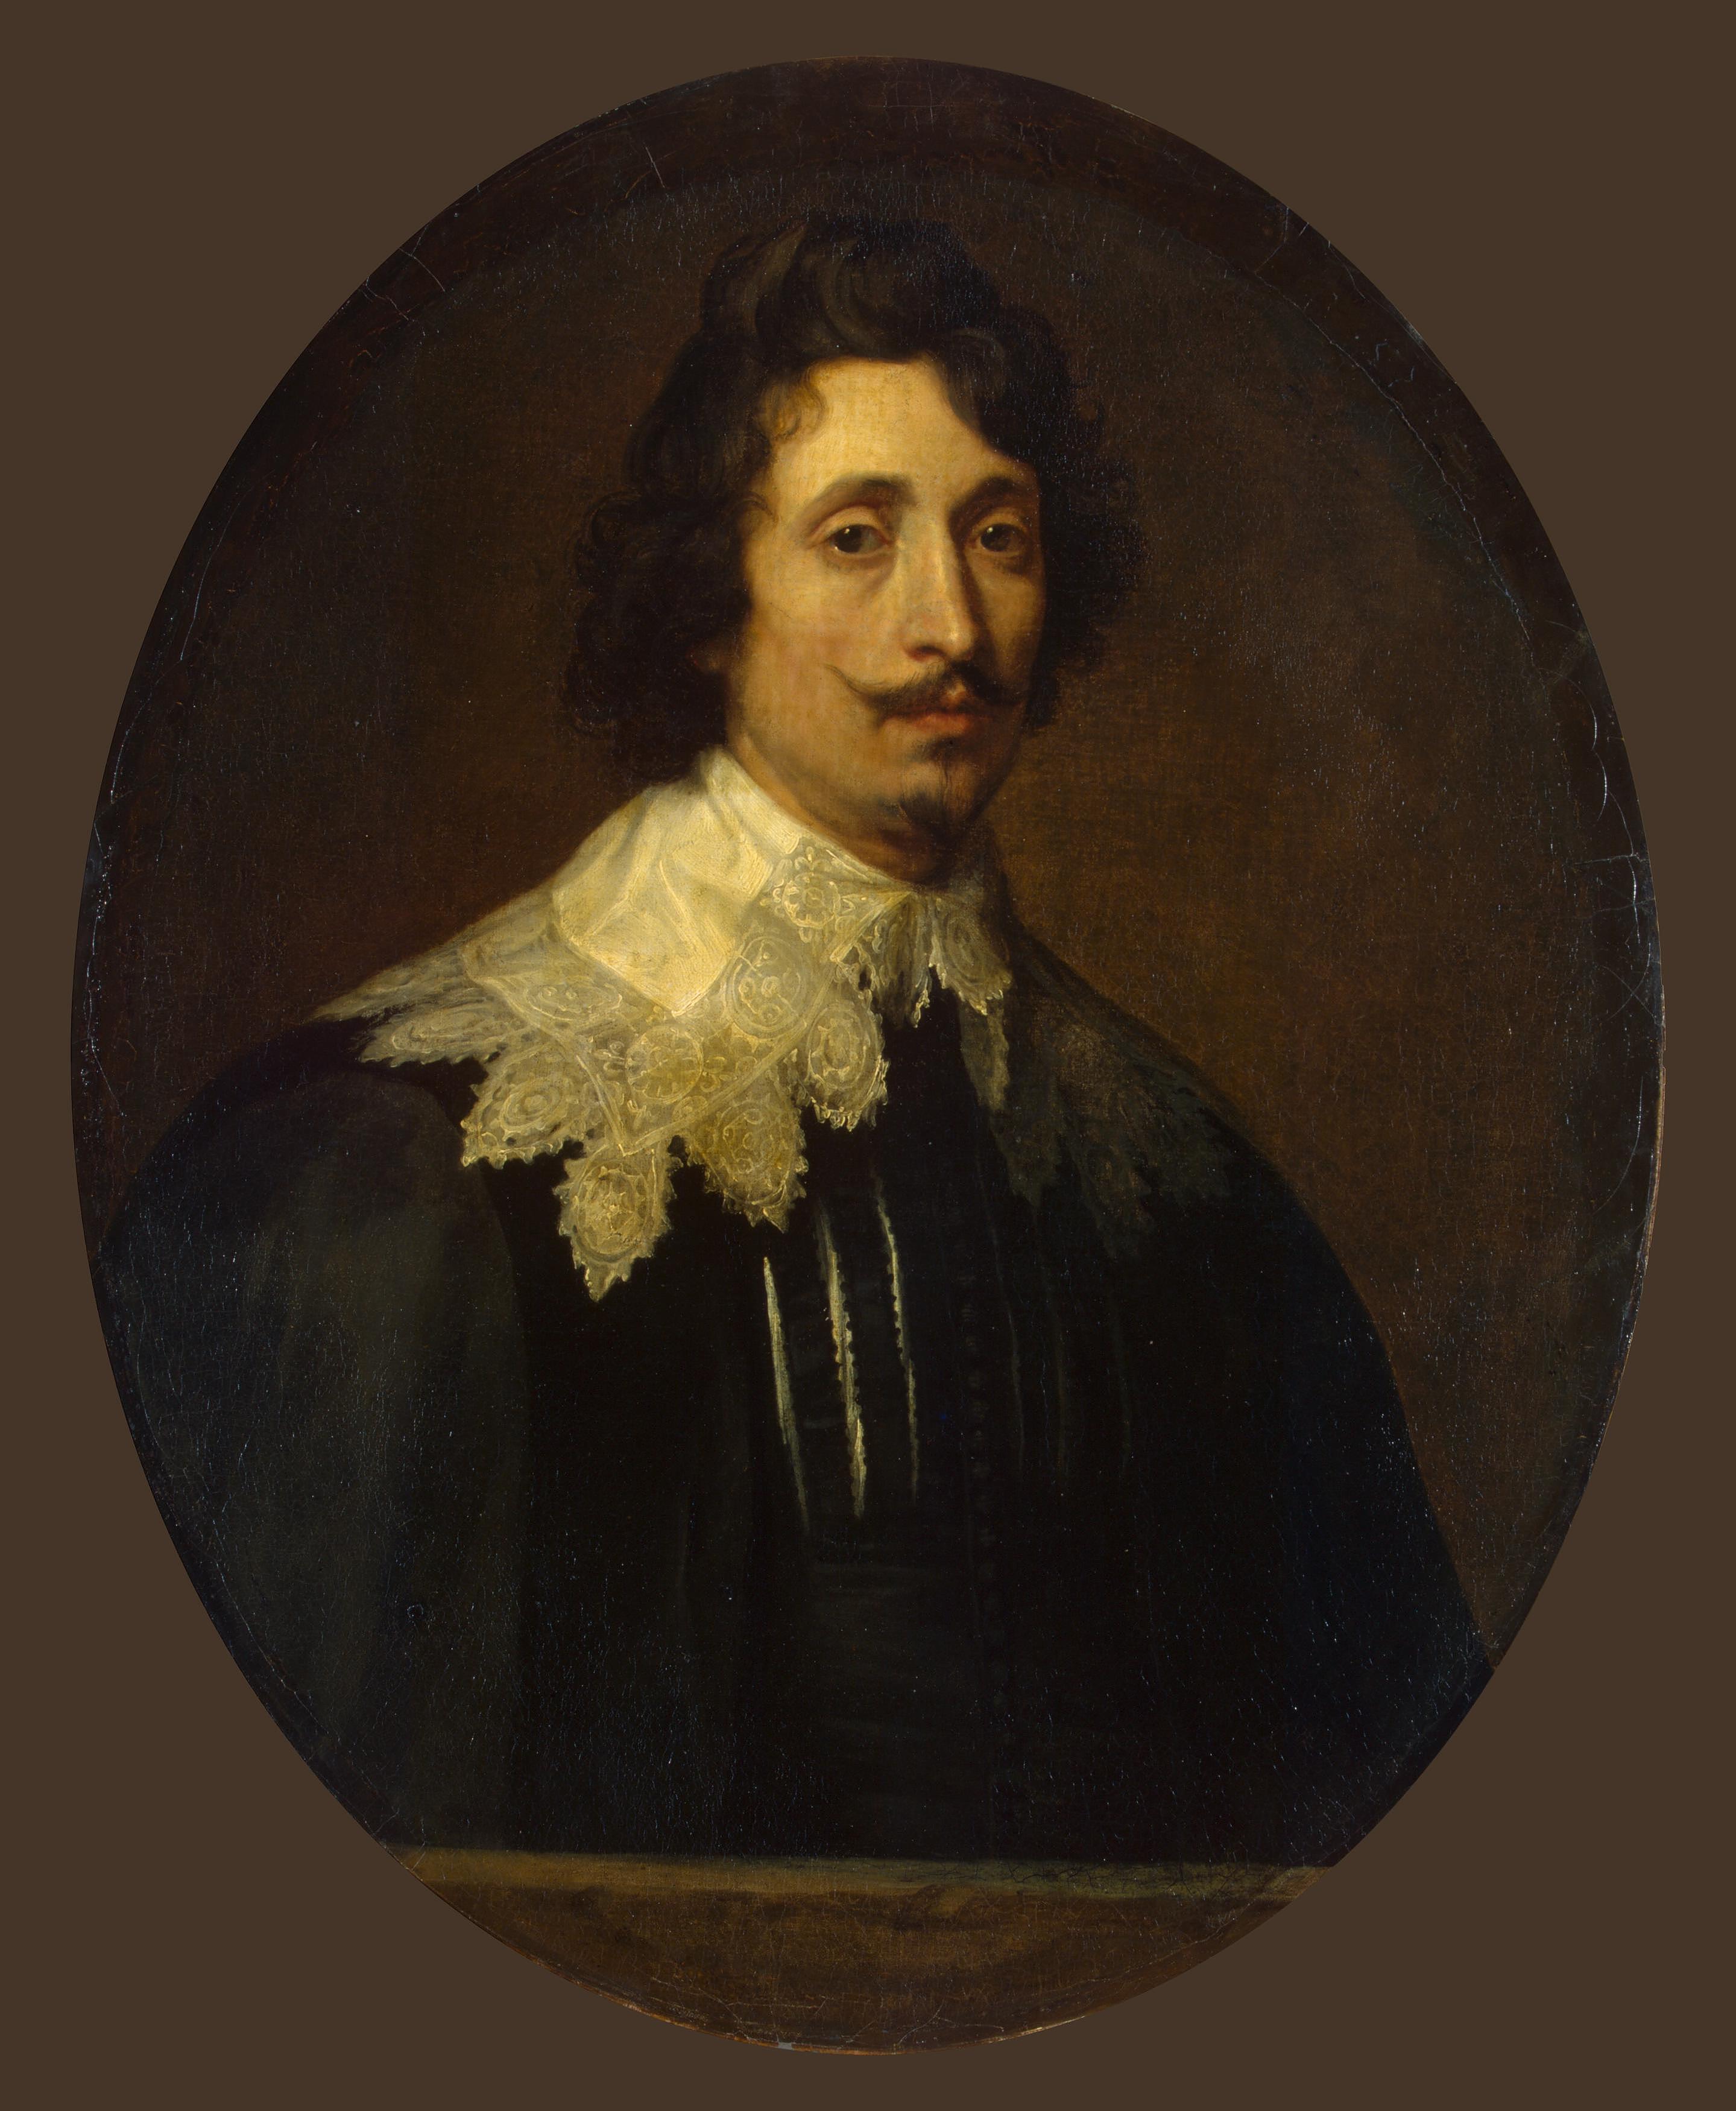 Антонис Ван Дейк. "Портрет молодого человека". Около 1634-1635. Эрмитаж, Санкт-Петербург.